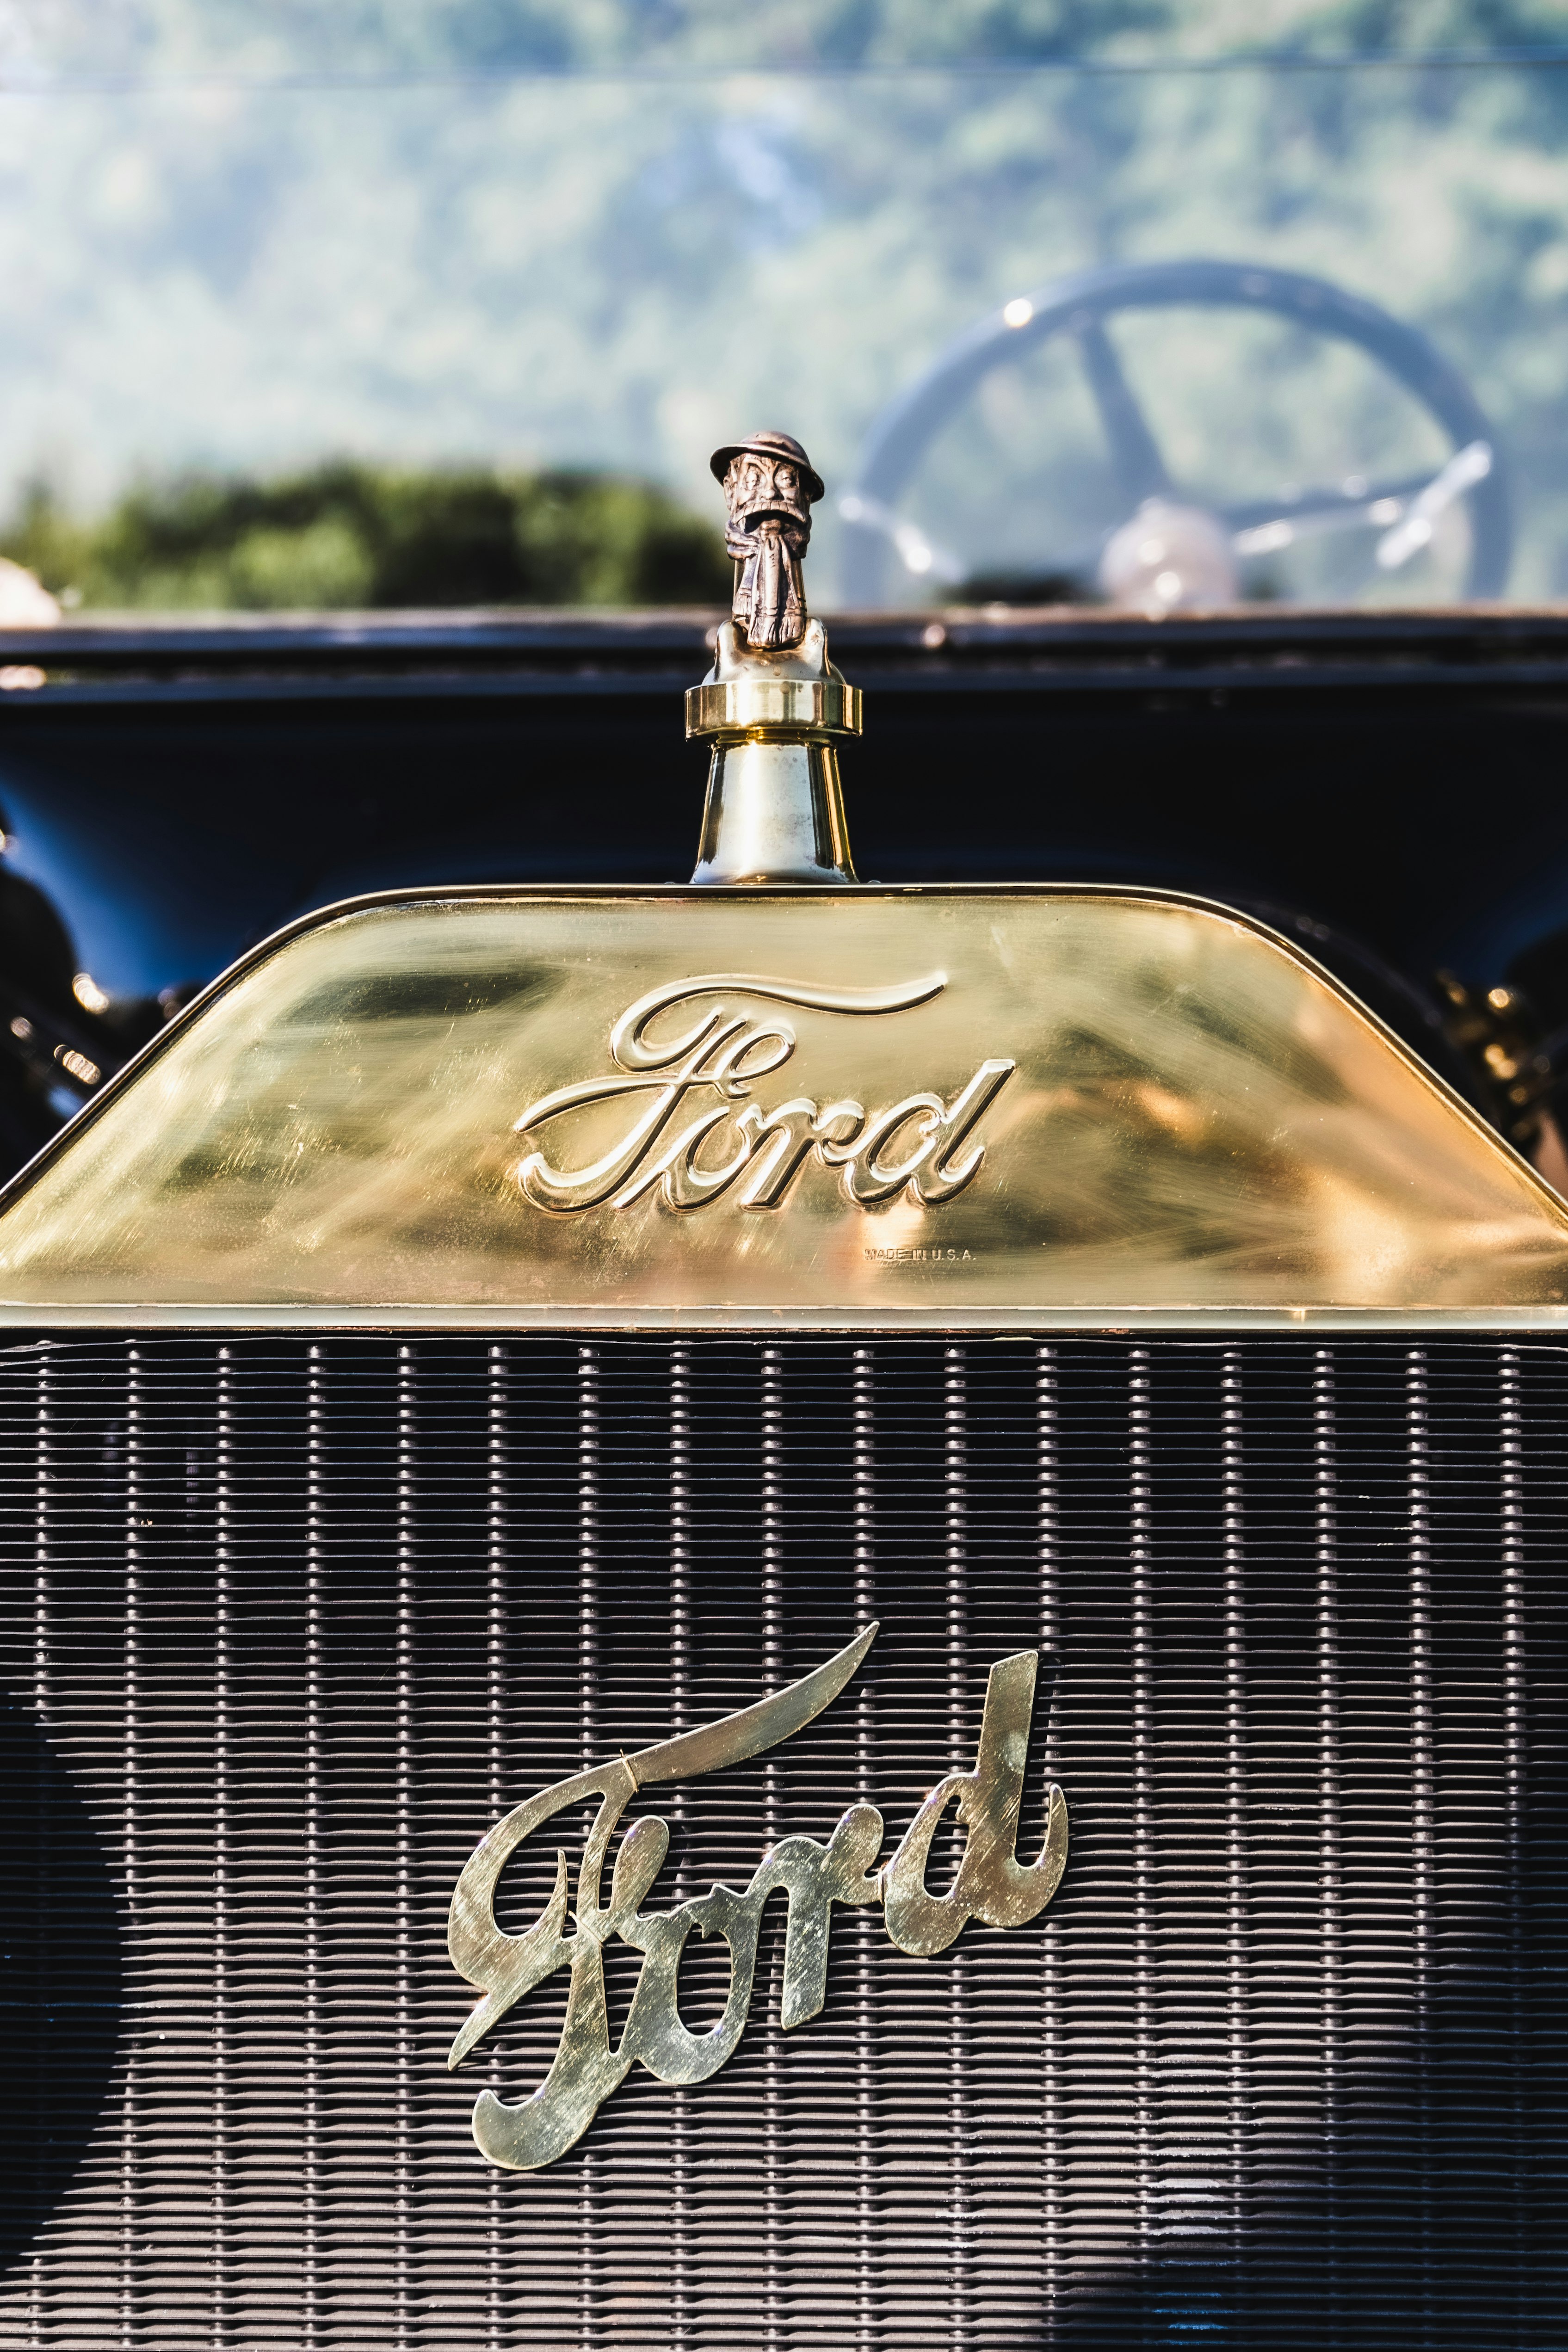 gold and black vintage car